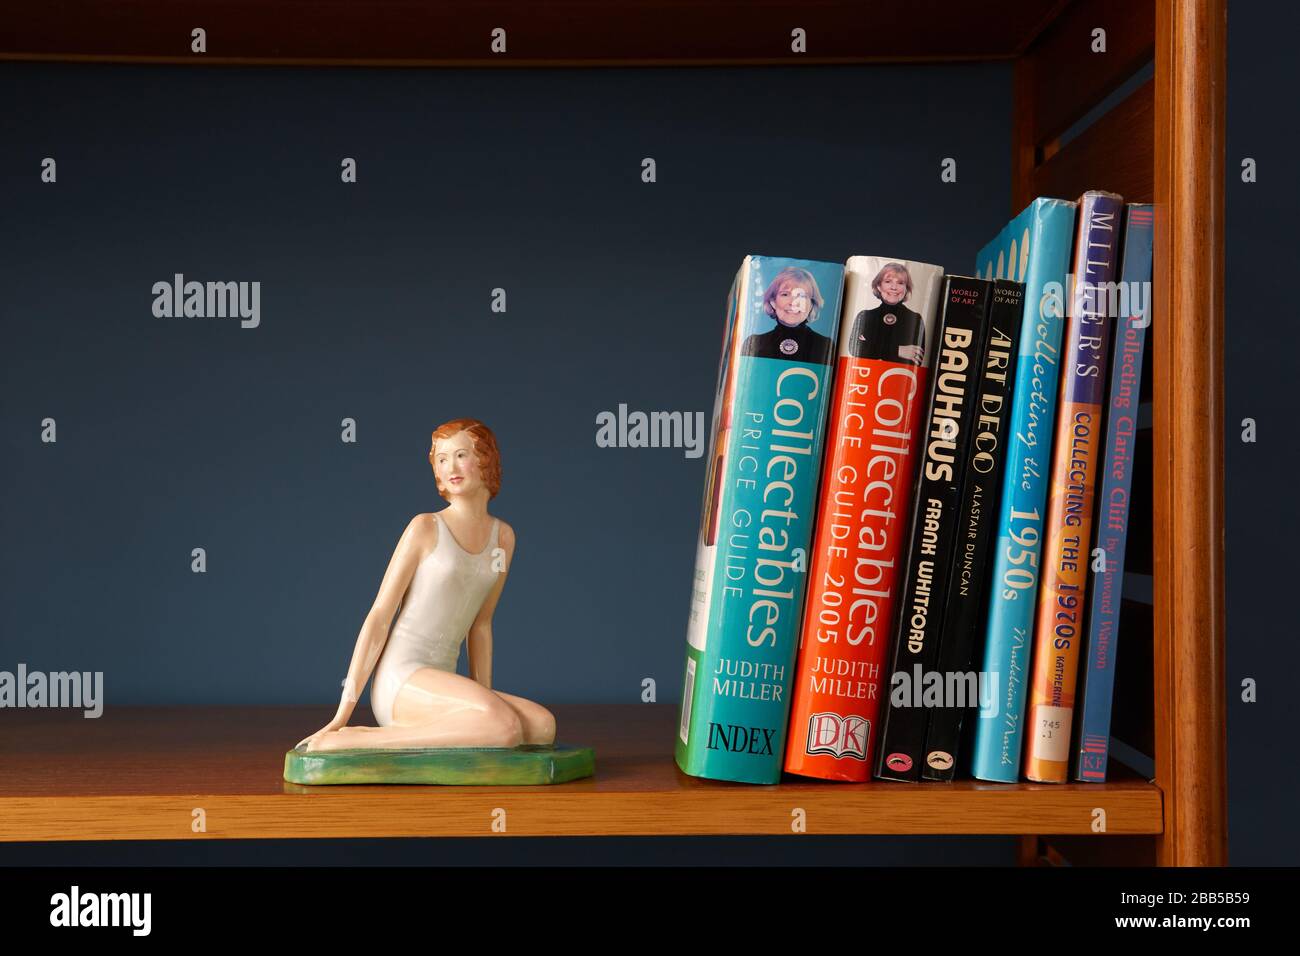 Fotografía de una figurilla de porcelana de mujer arrodillada en un estante, junto con libros sobre coleccionables y arte Foto de stock